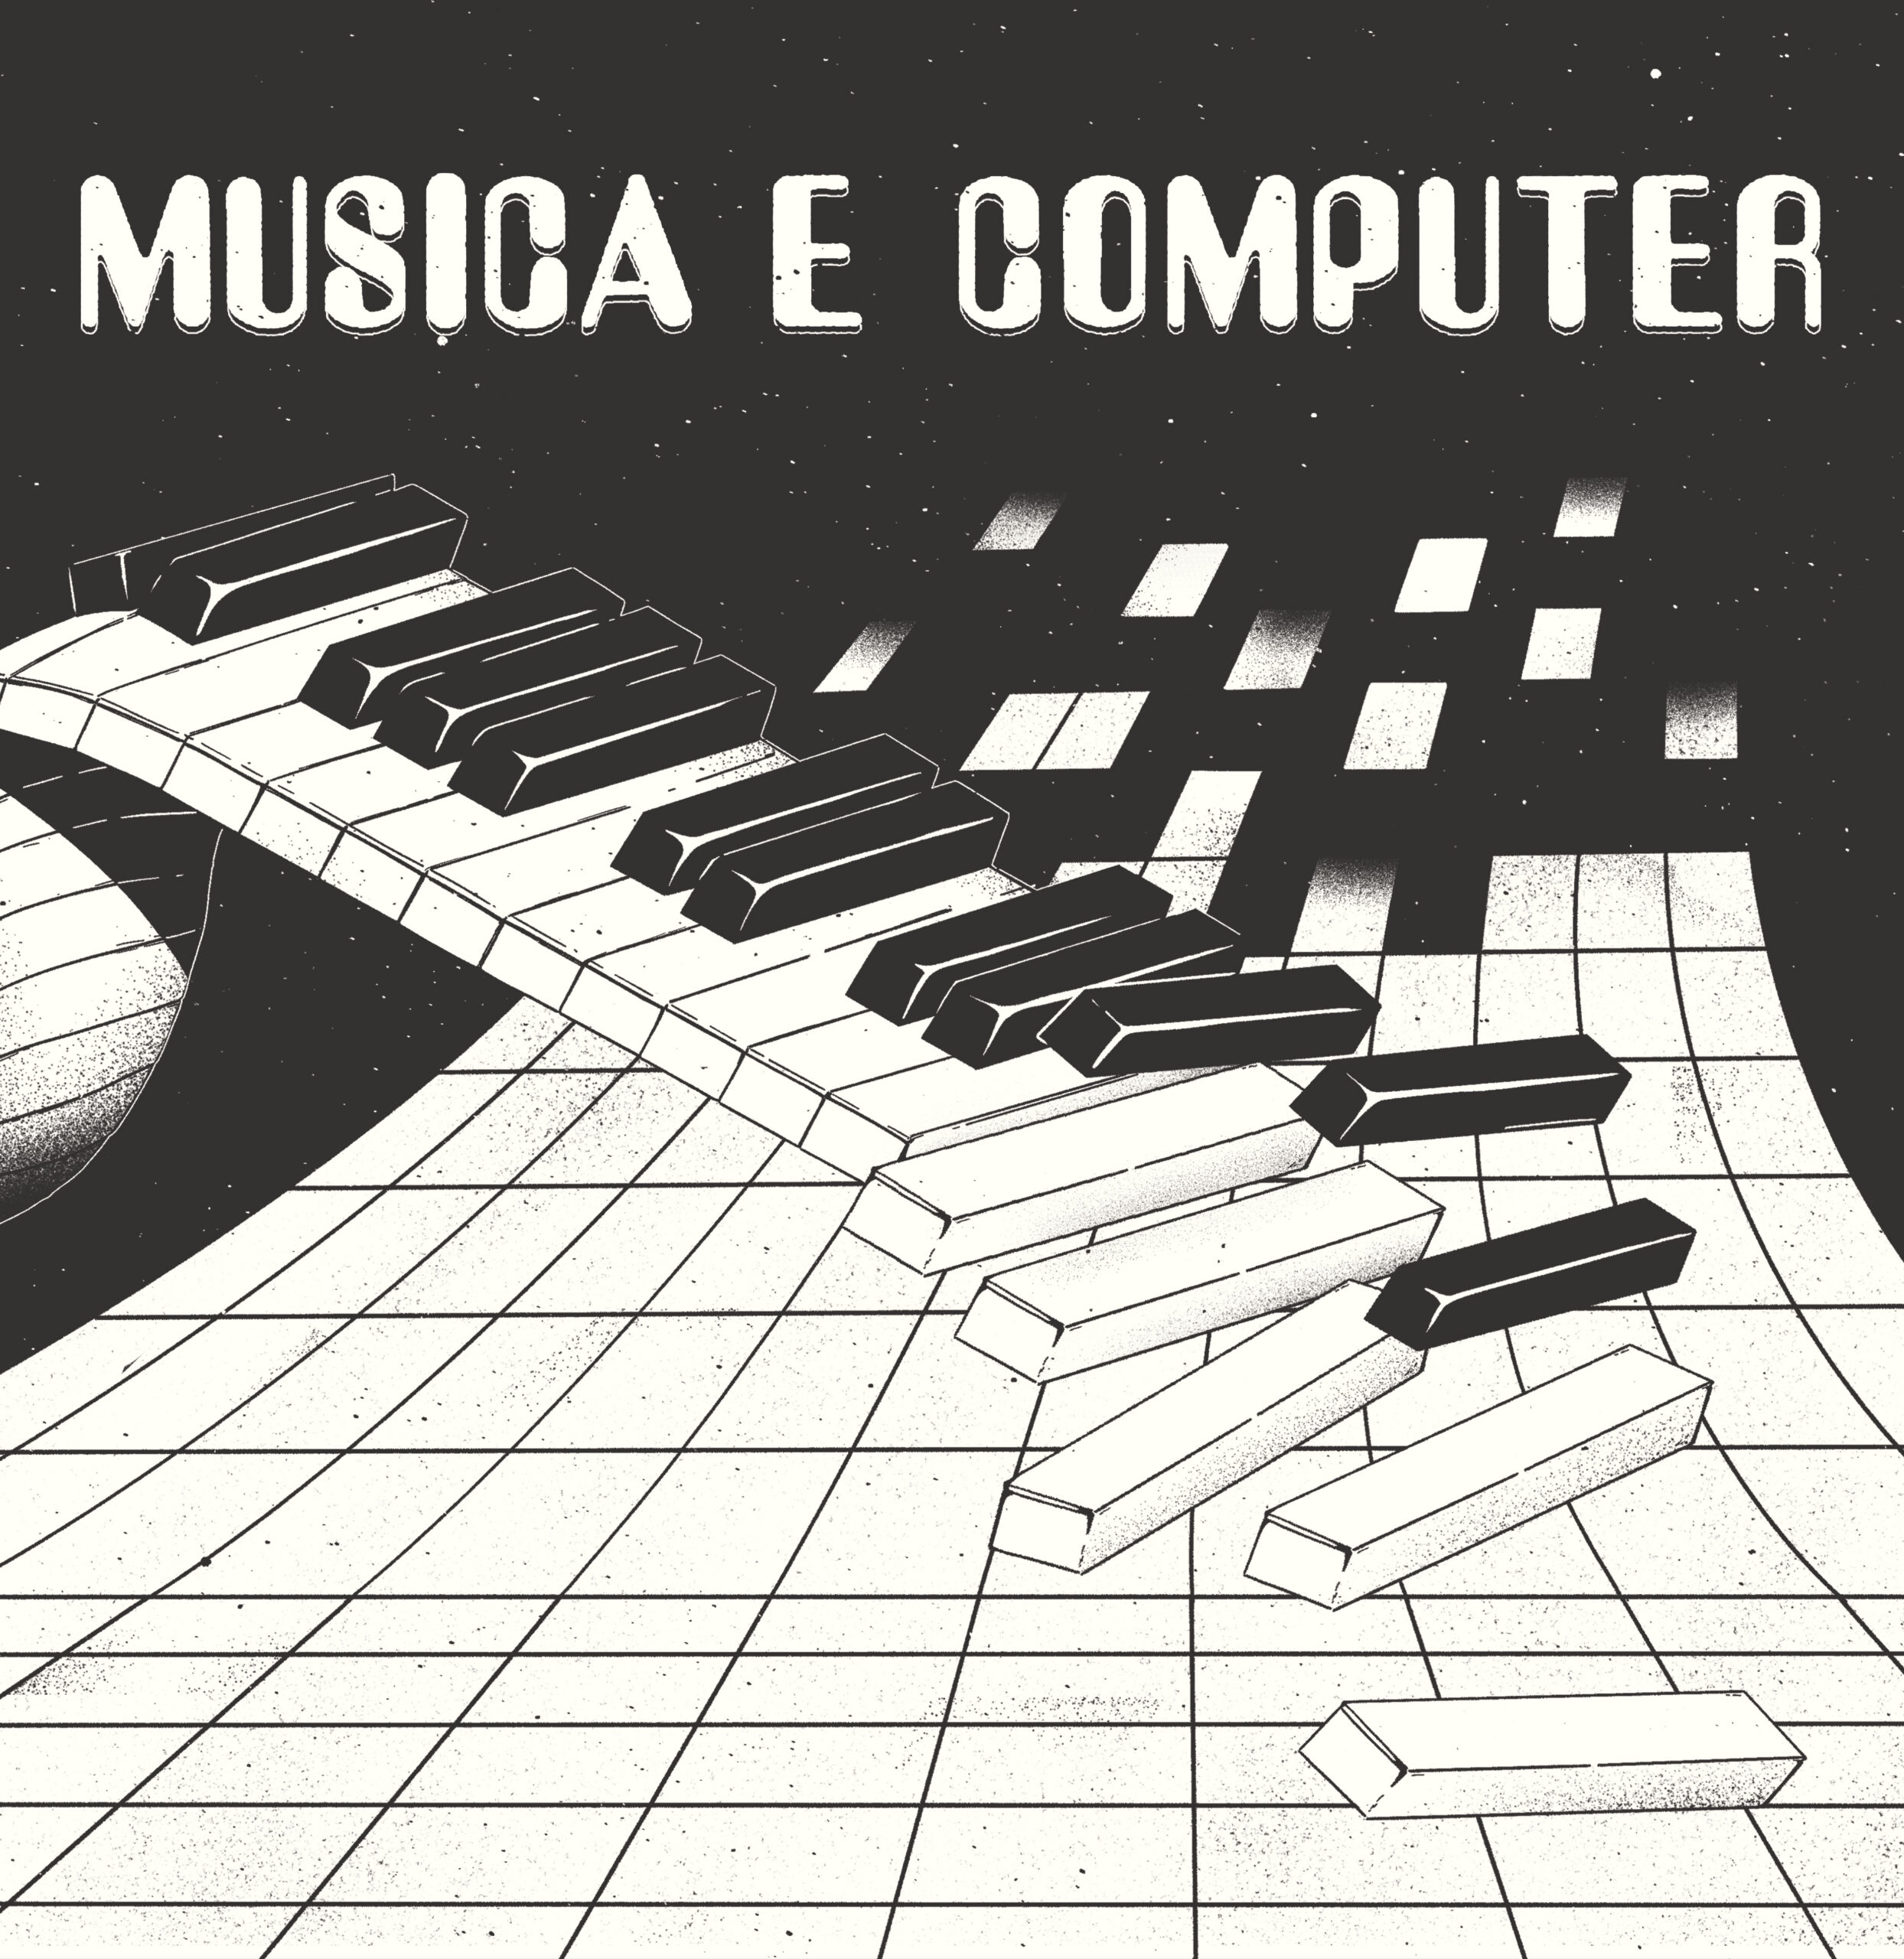 Musica E Computer by Rodion & Mammarella